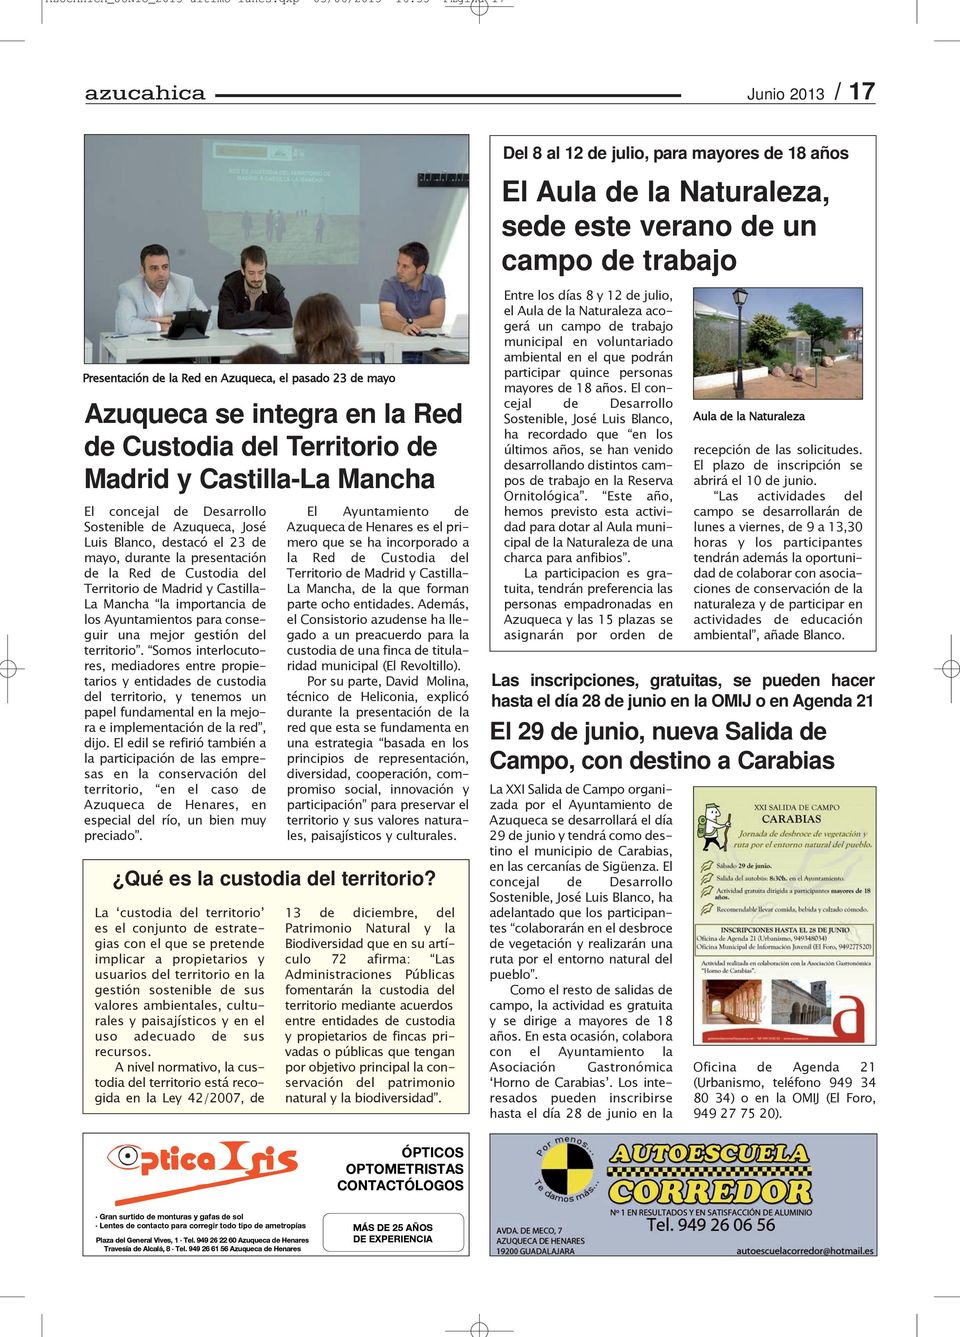 concejal de Desarrollo Sostenible de Azuqueca, José Luis Blanco, destacó el 23 de mayo, durante la presentación de la Red de Custodia del Territorio de Madrid y Castilla- La Mancha la importancia de